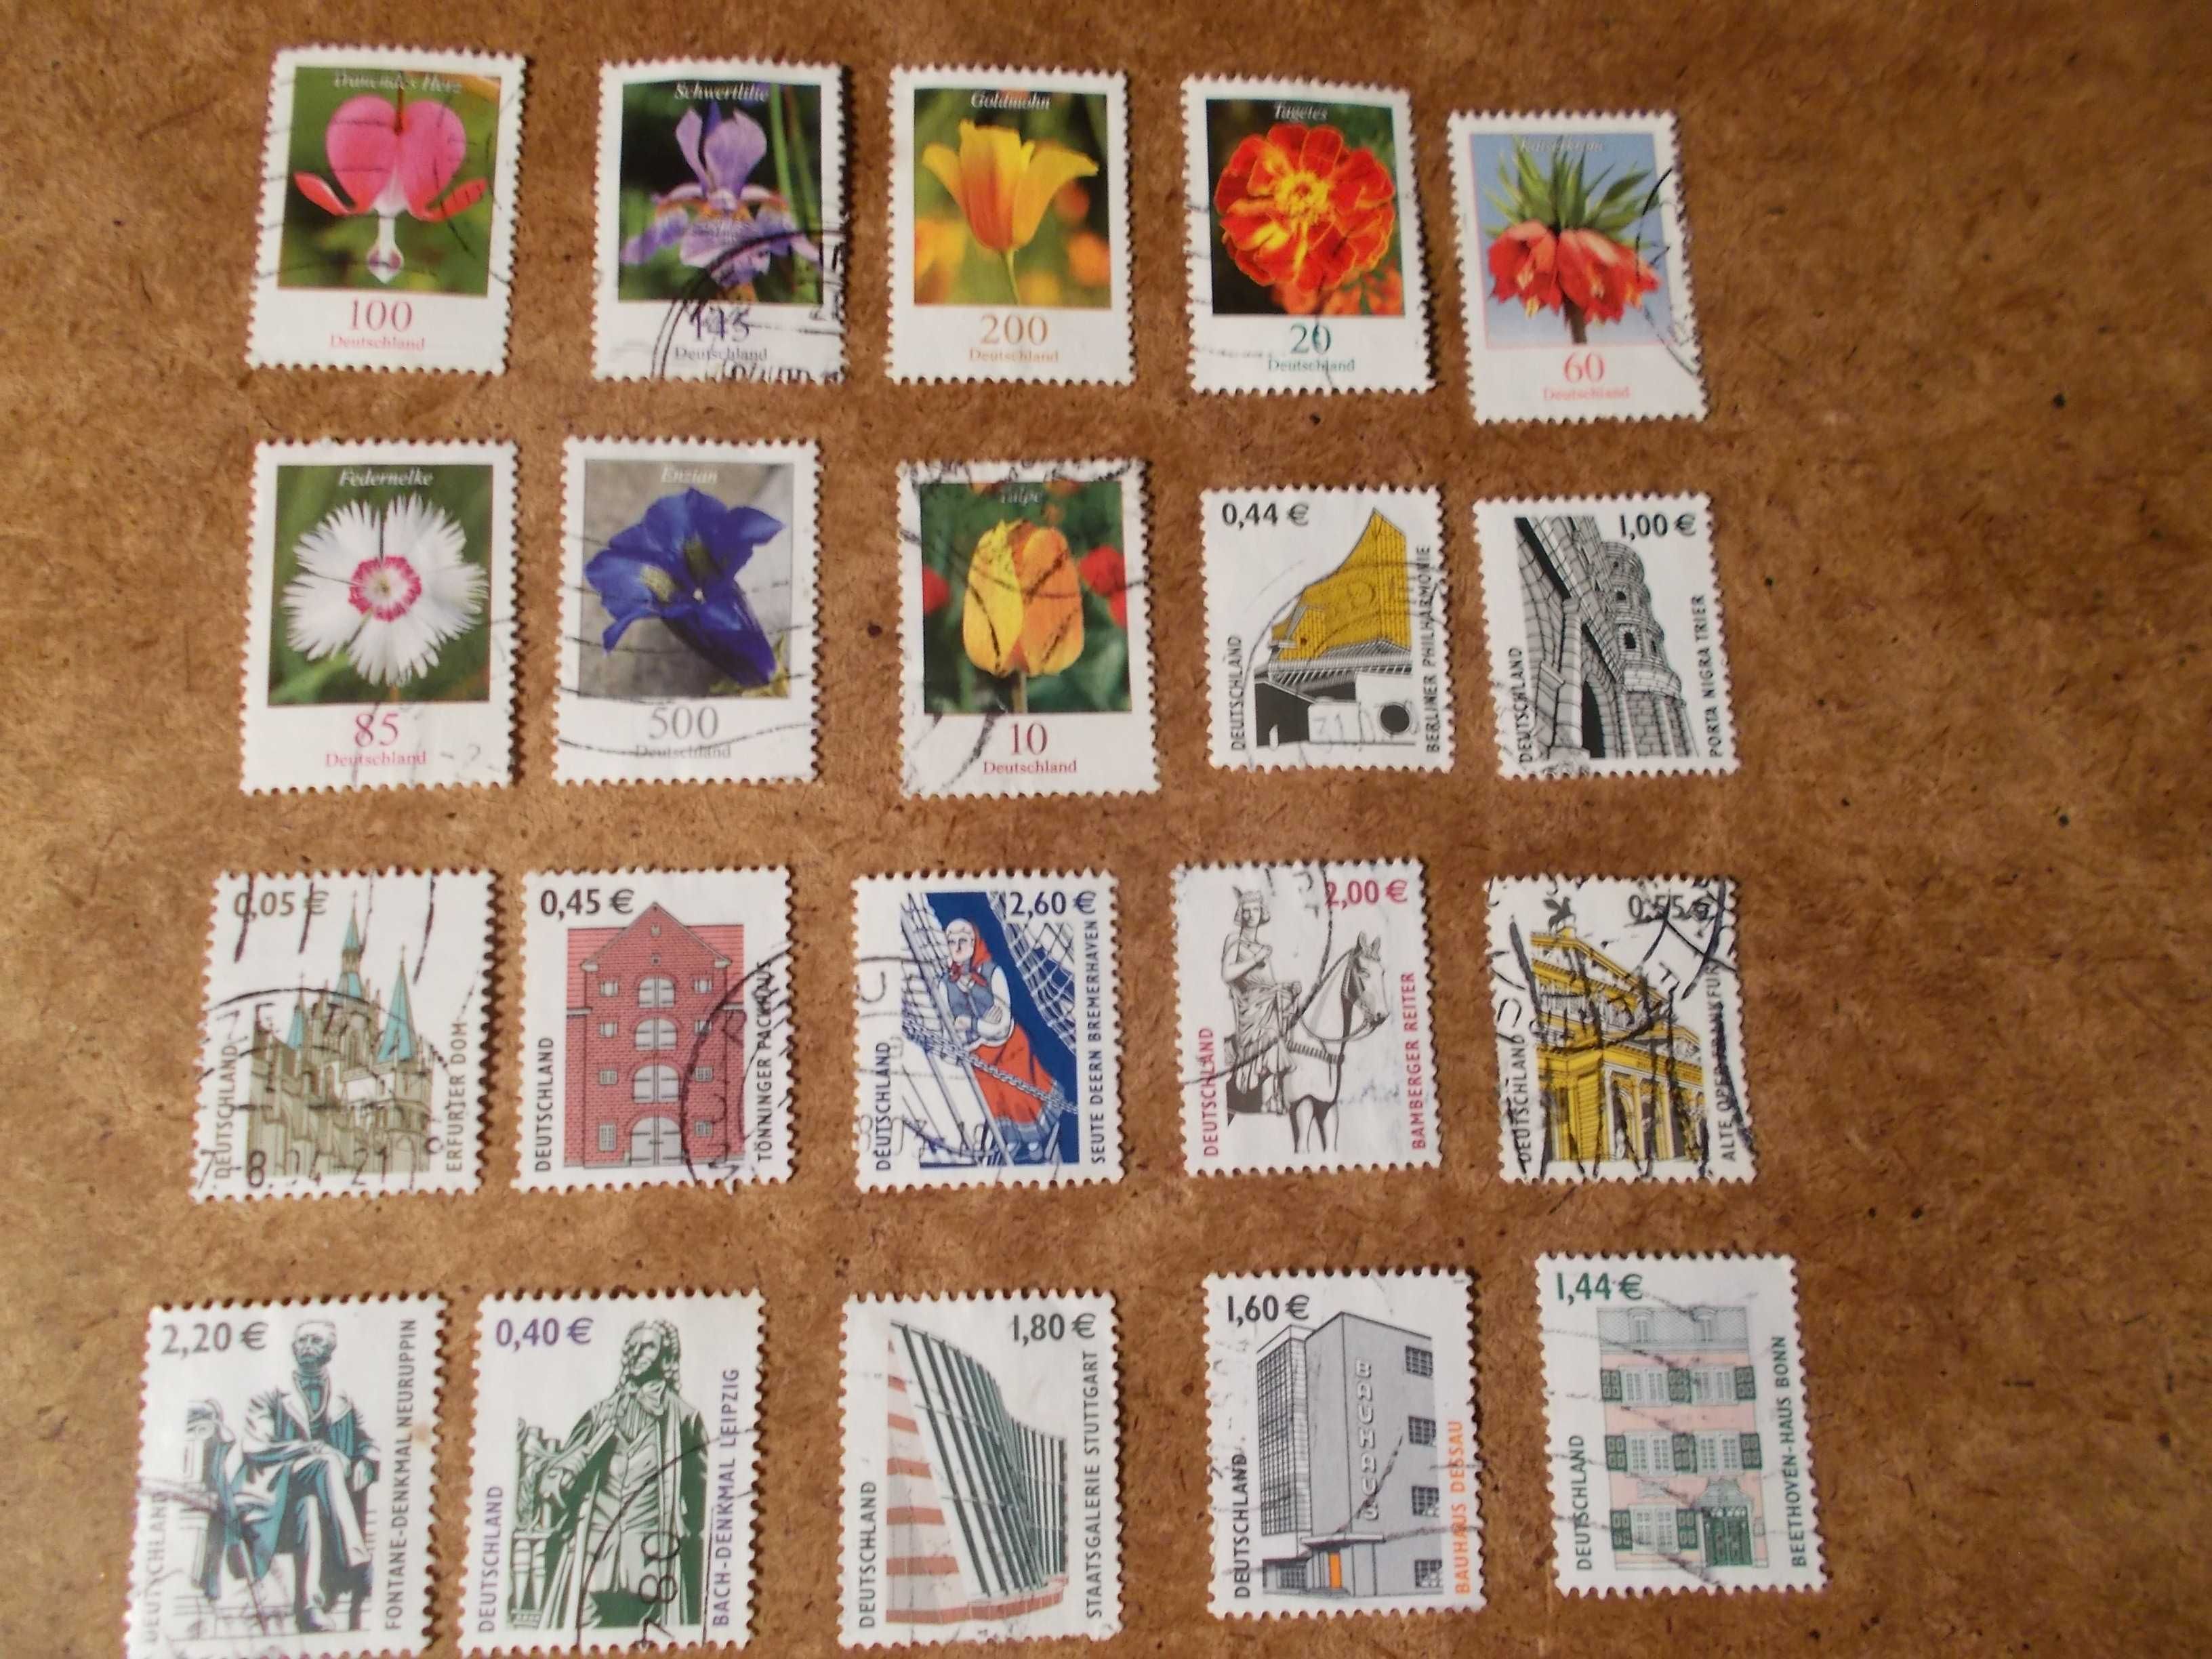 60 selos da Alemanha